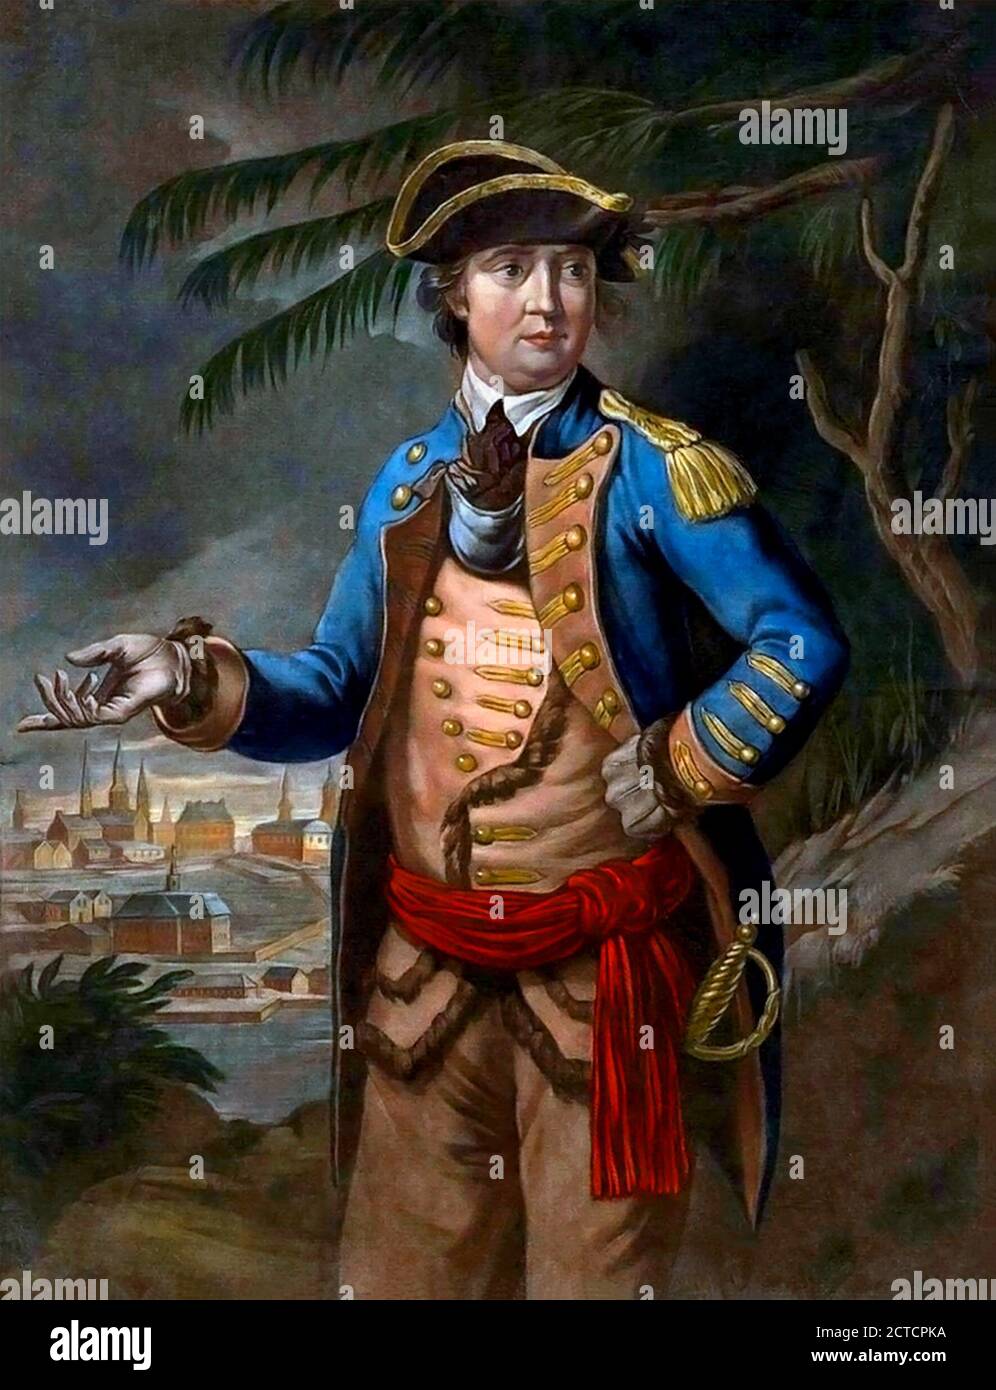 Benedetto Arnold (1741-1801), un generale durante la guerra rivoluzionaria americana che originariamente combatté per l'esercito continentale americano ma si sfuggeva all'esercito britannico. In questa illustrazione è mostrato nell'uniforme di un colonnello al comando delle truppe provinciali inviate contro il Québec. Colore mezzotinta. Foto Stock